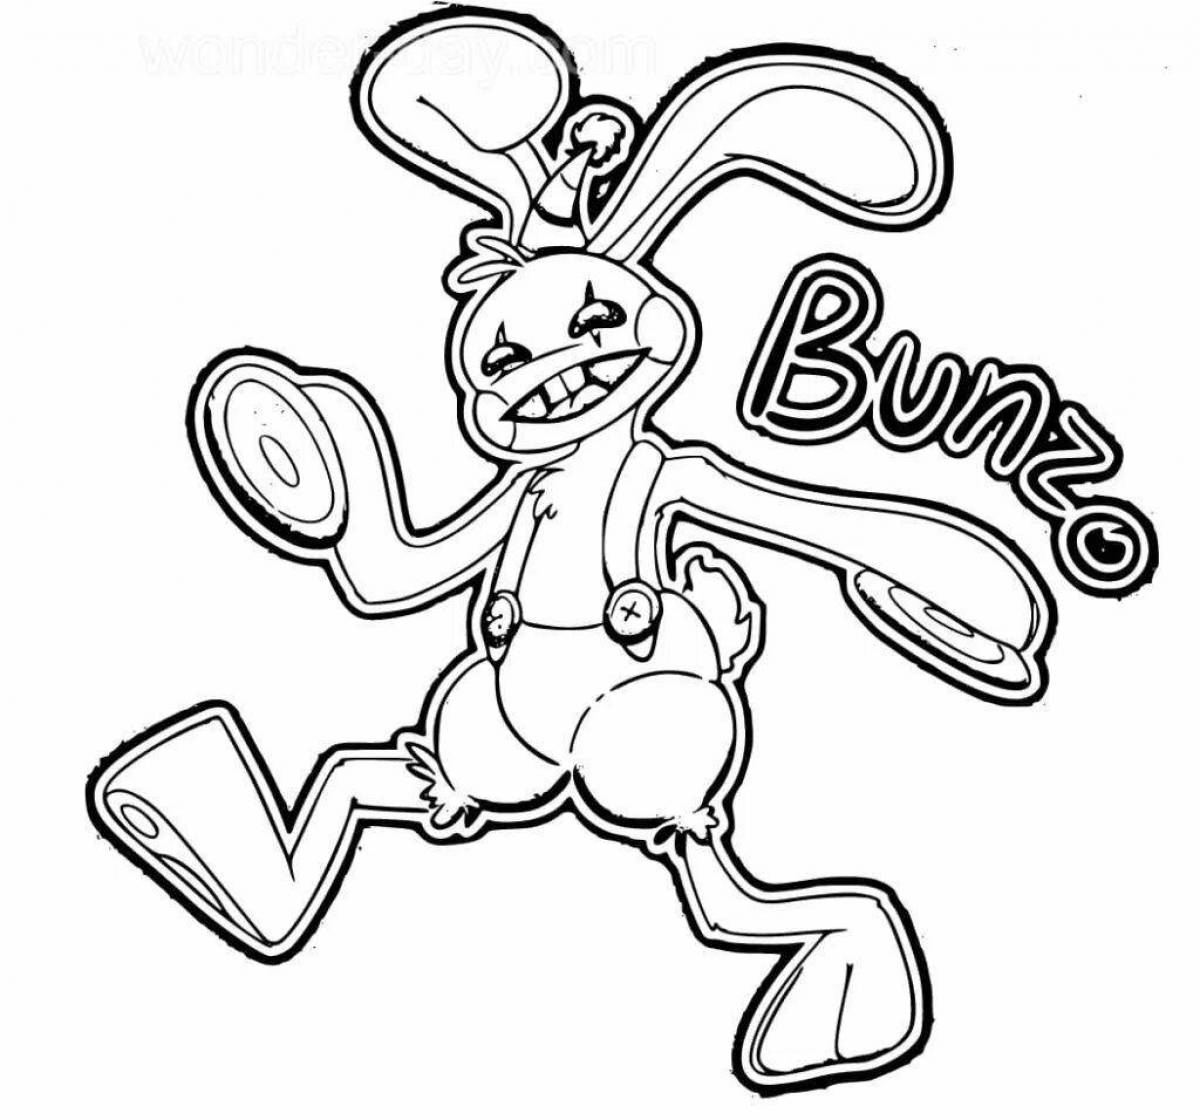 Bunny plush coloring bonza